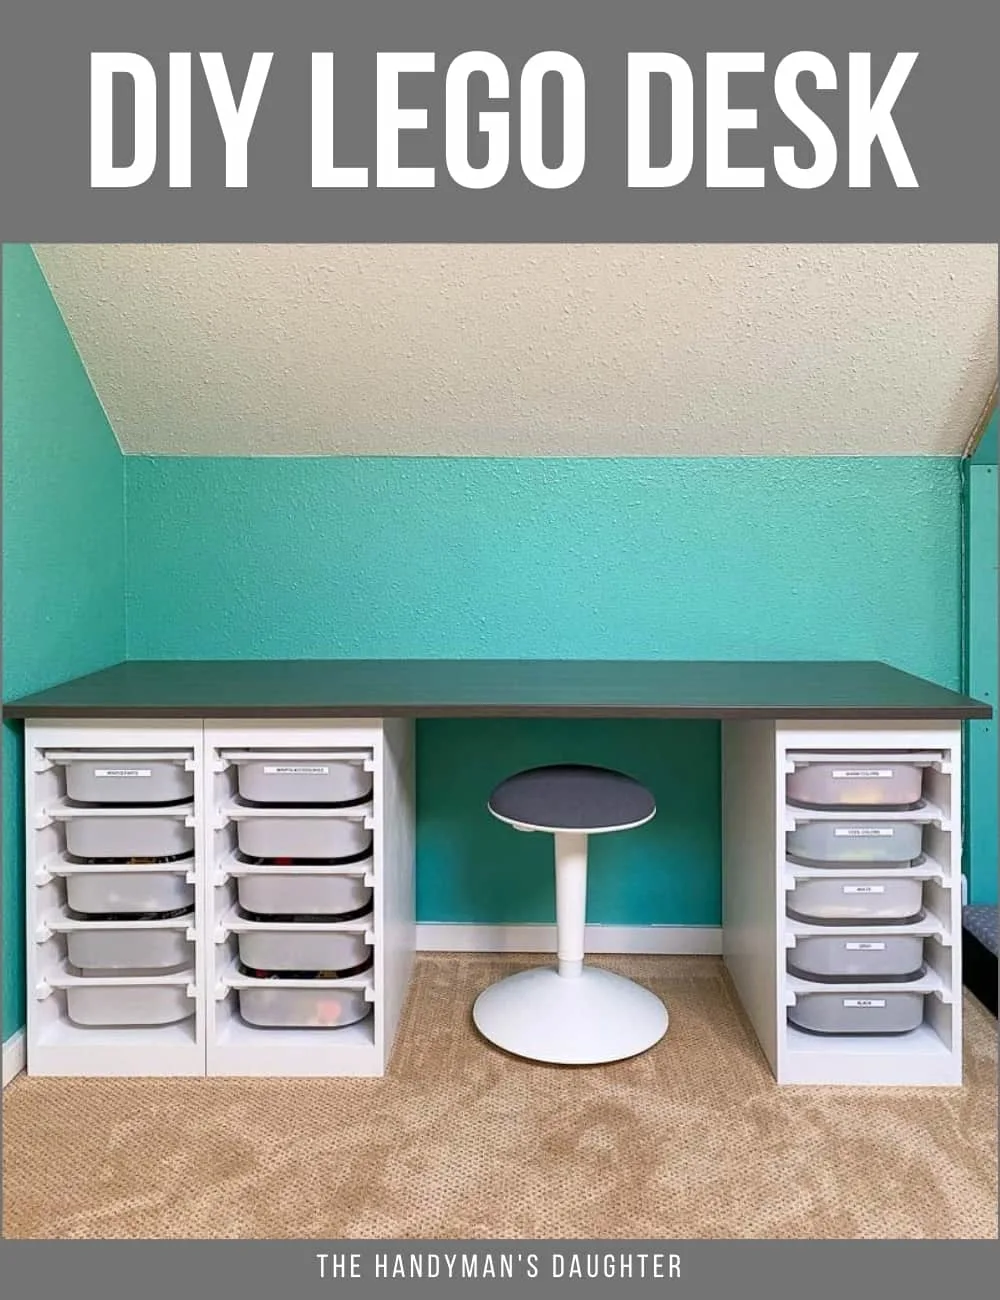 DIY Lego desk with IKEA Trofast bins